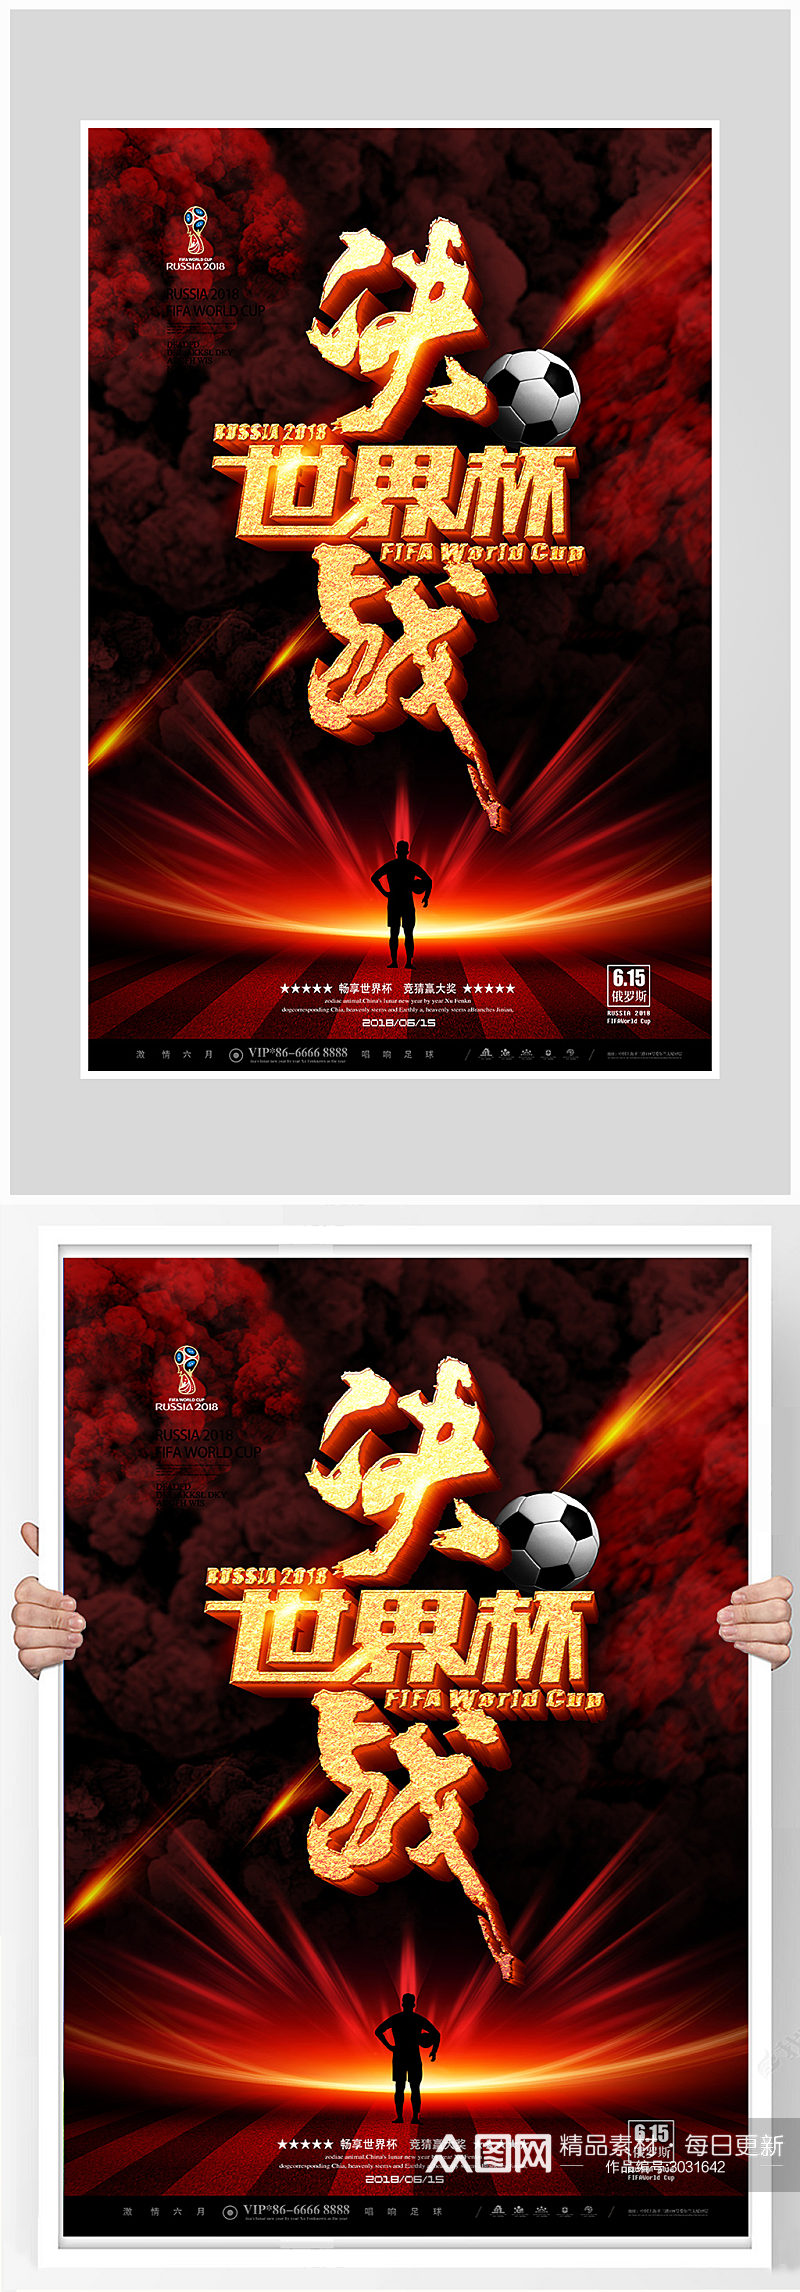 决战世界杯足球比赛海报设计素材